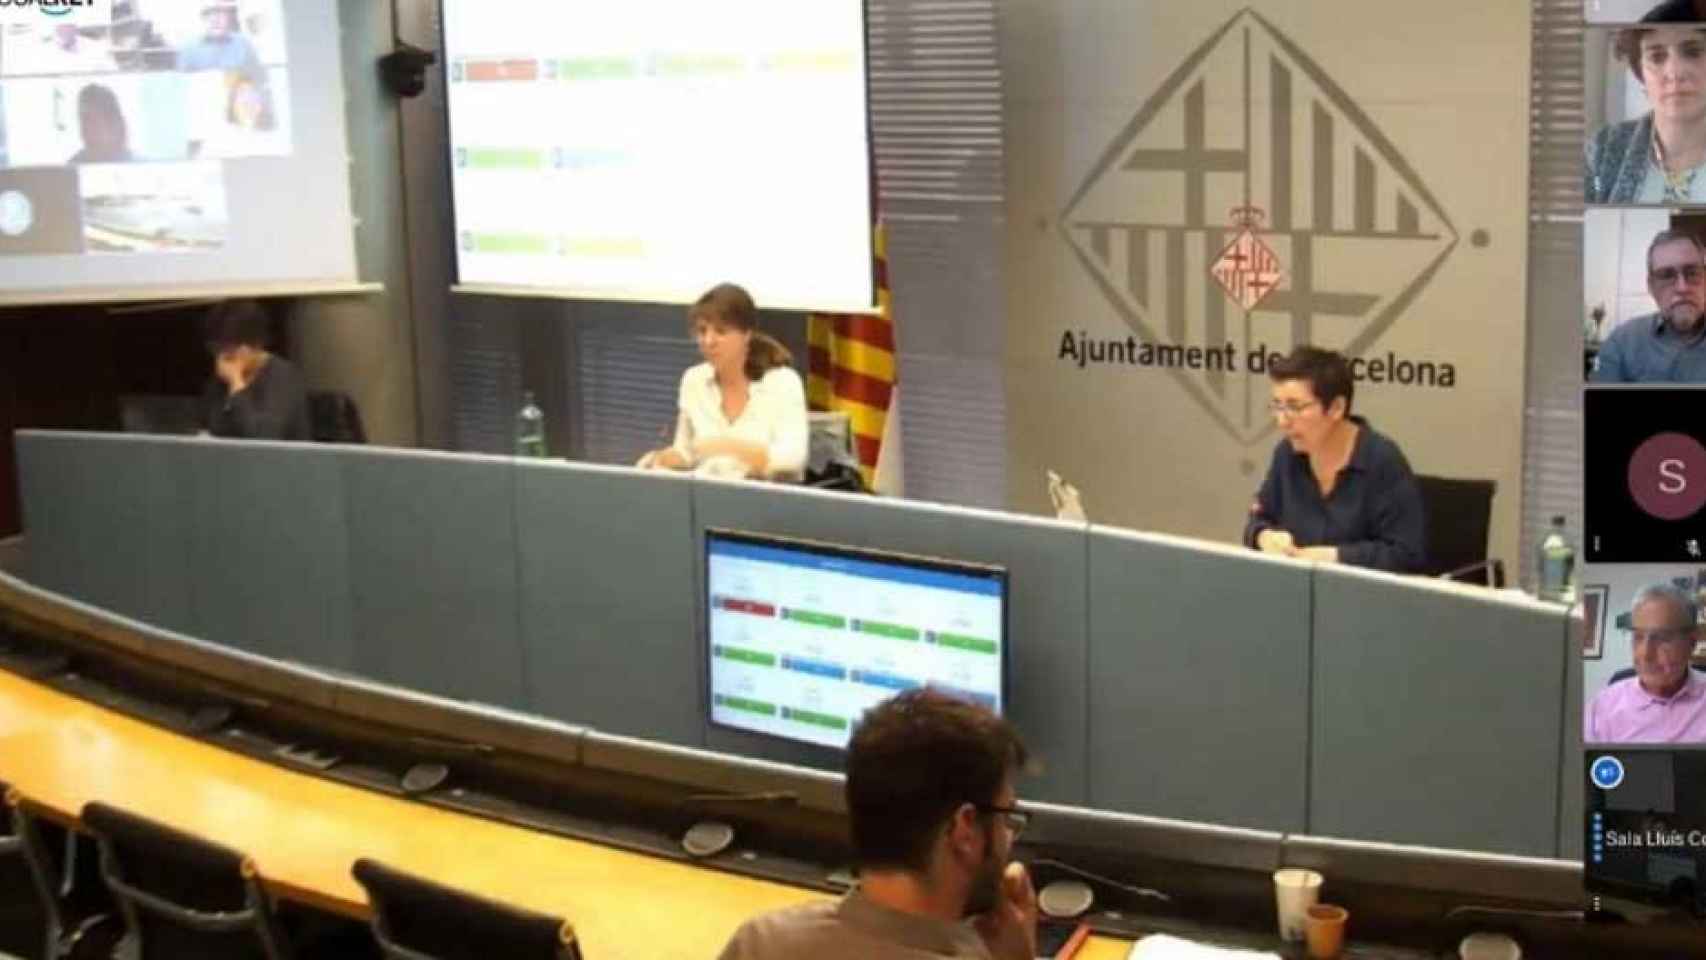 Comisión de Ecologia, Urbanismo y Movilidad del Ayuntamiento de Barcelona / AYUNTAMIENTO DE BARCELONA